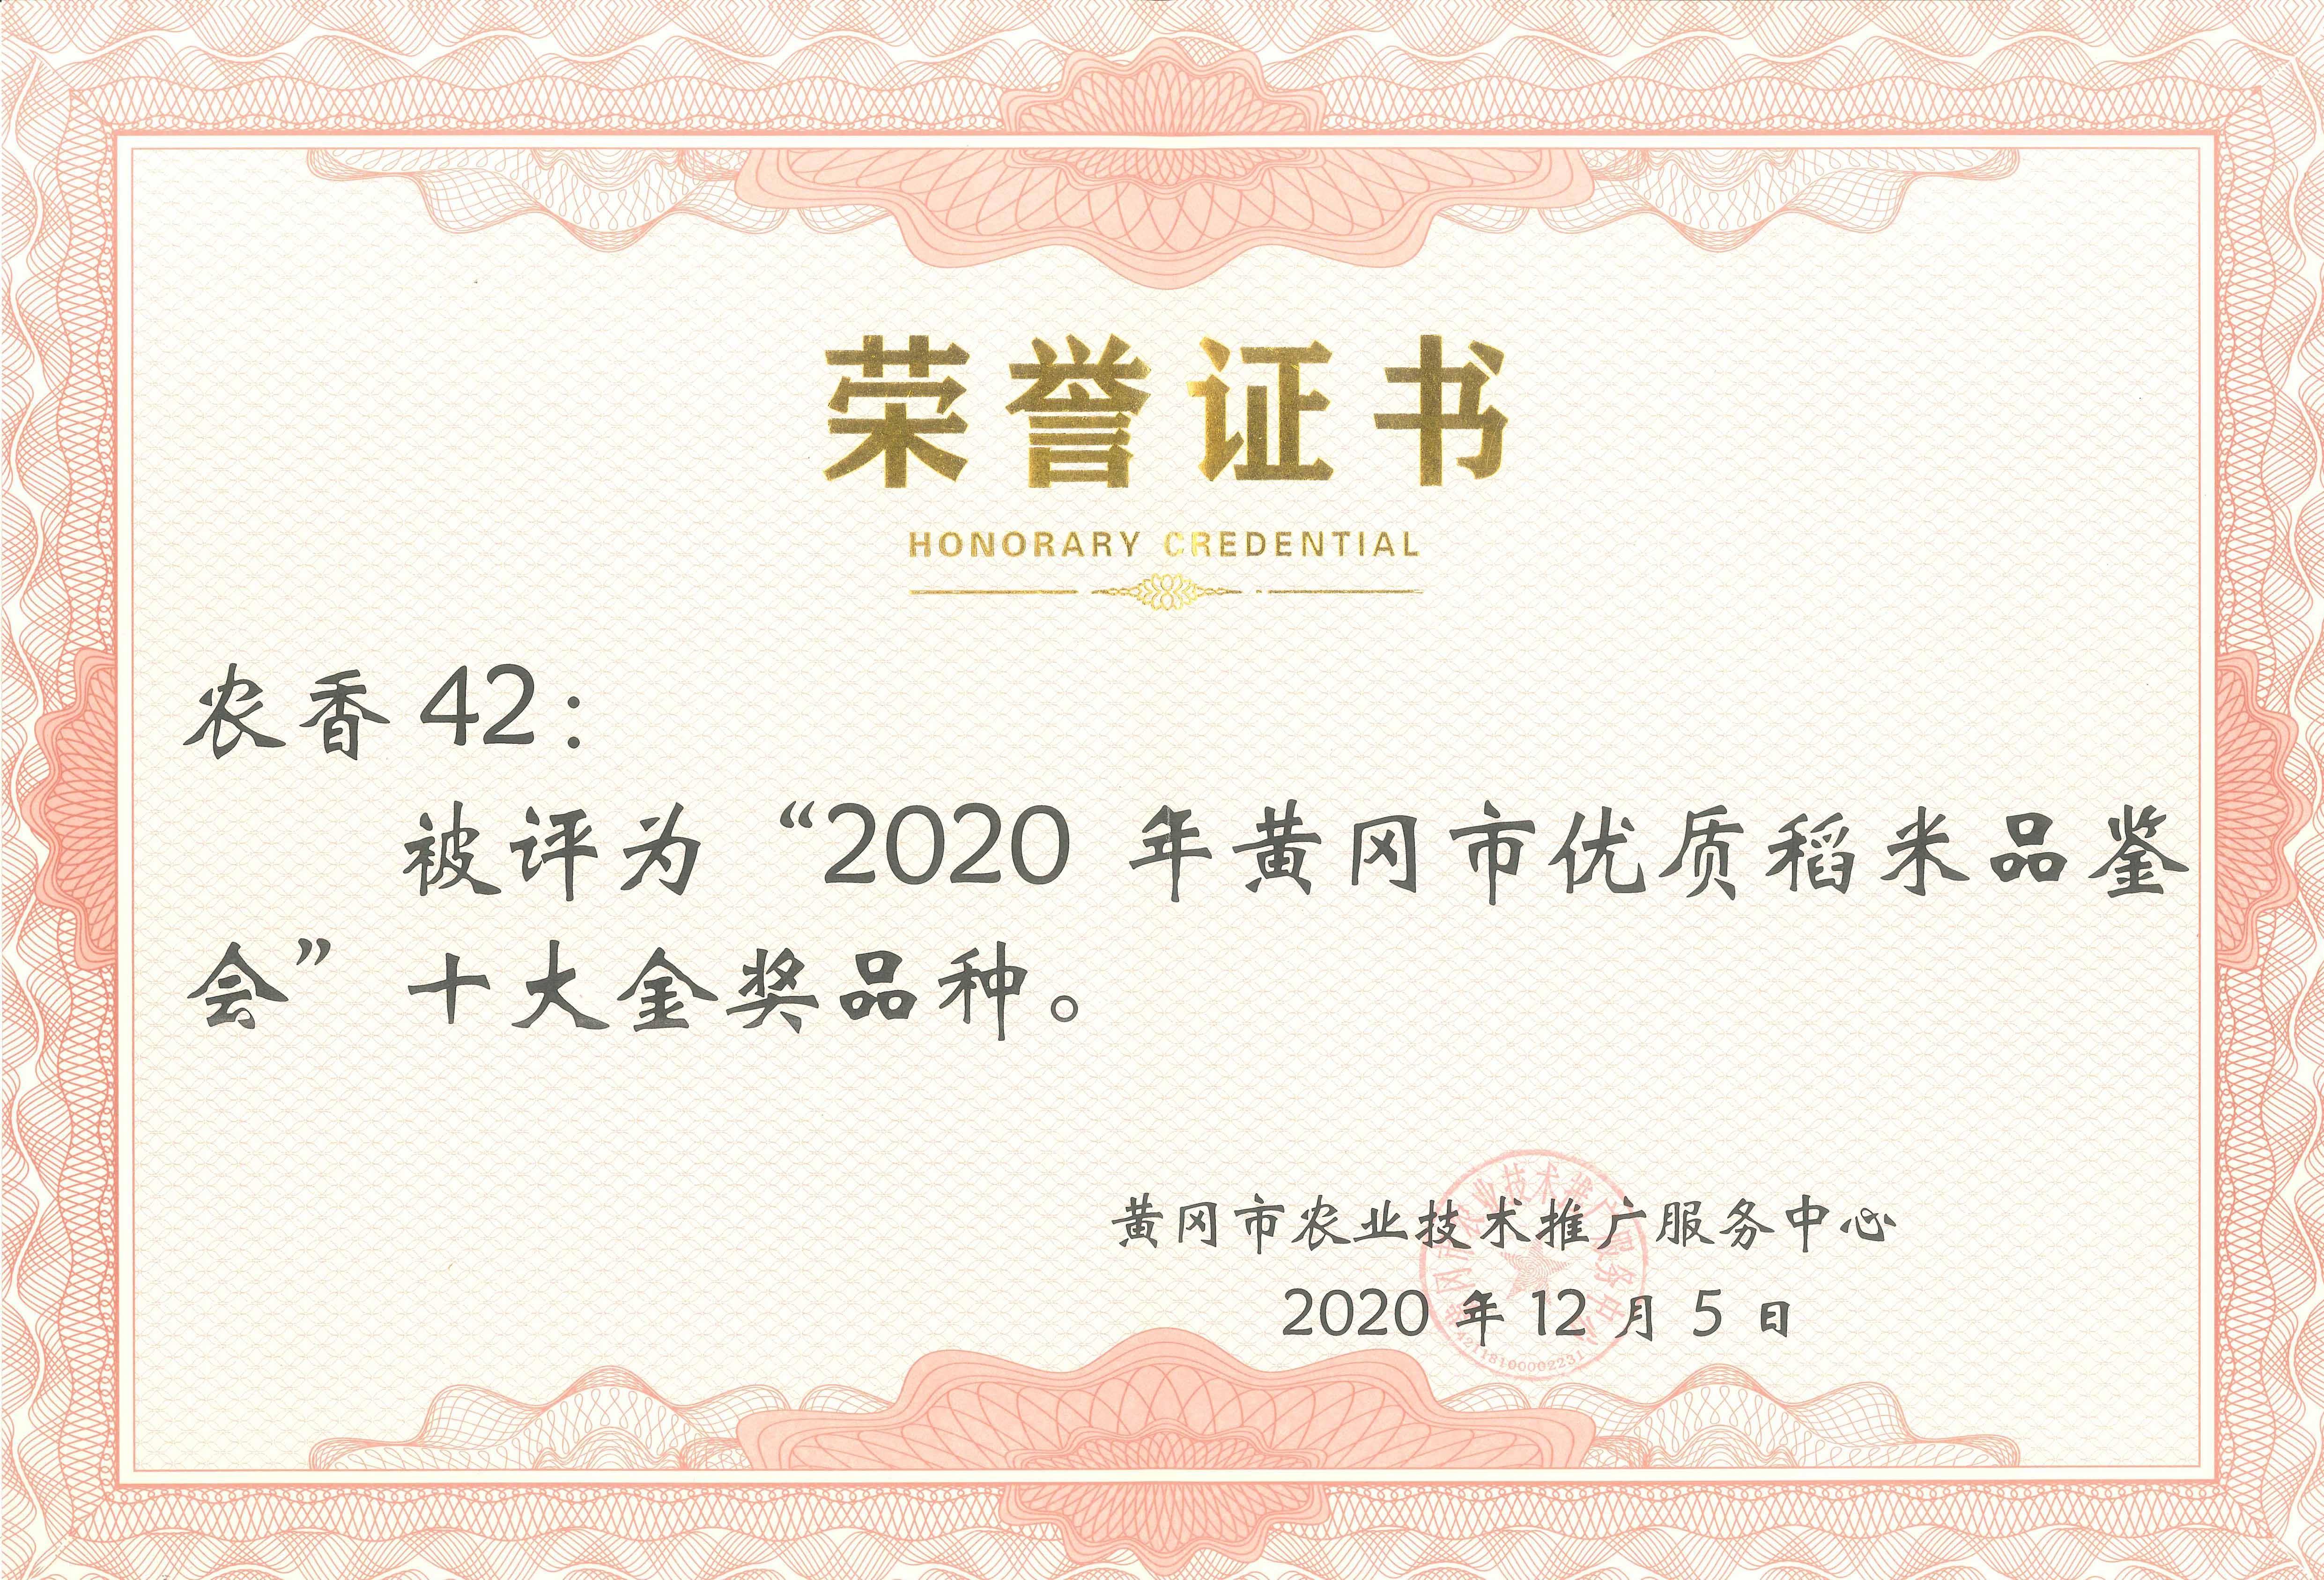 2020年黄冈市优质稻米鉴评会金奖品种